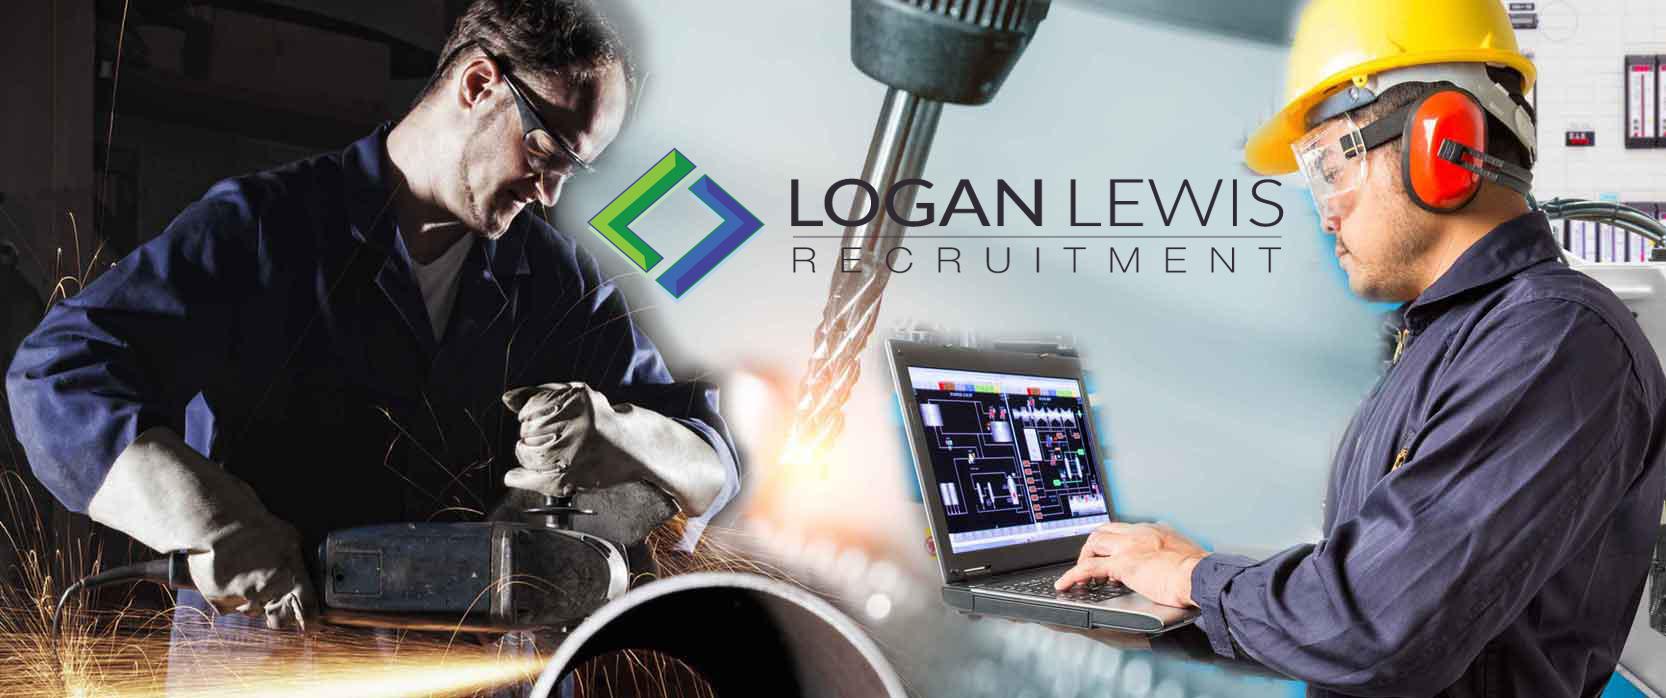 Images Logan Lewis Recruitment